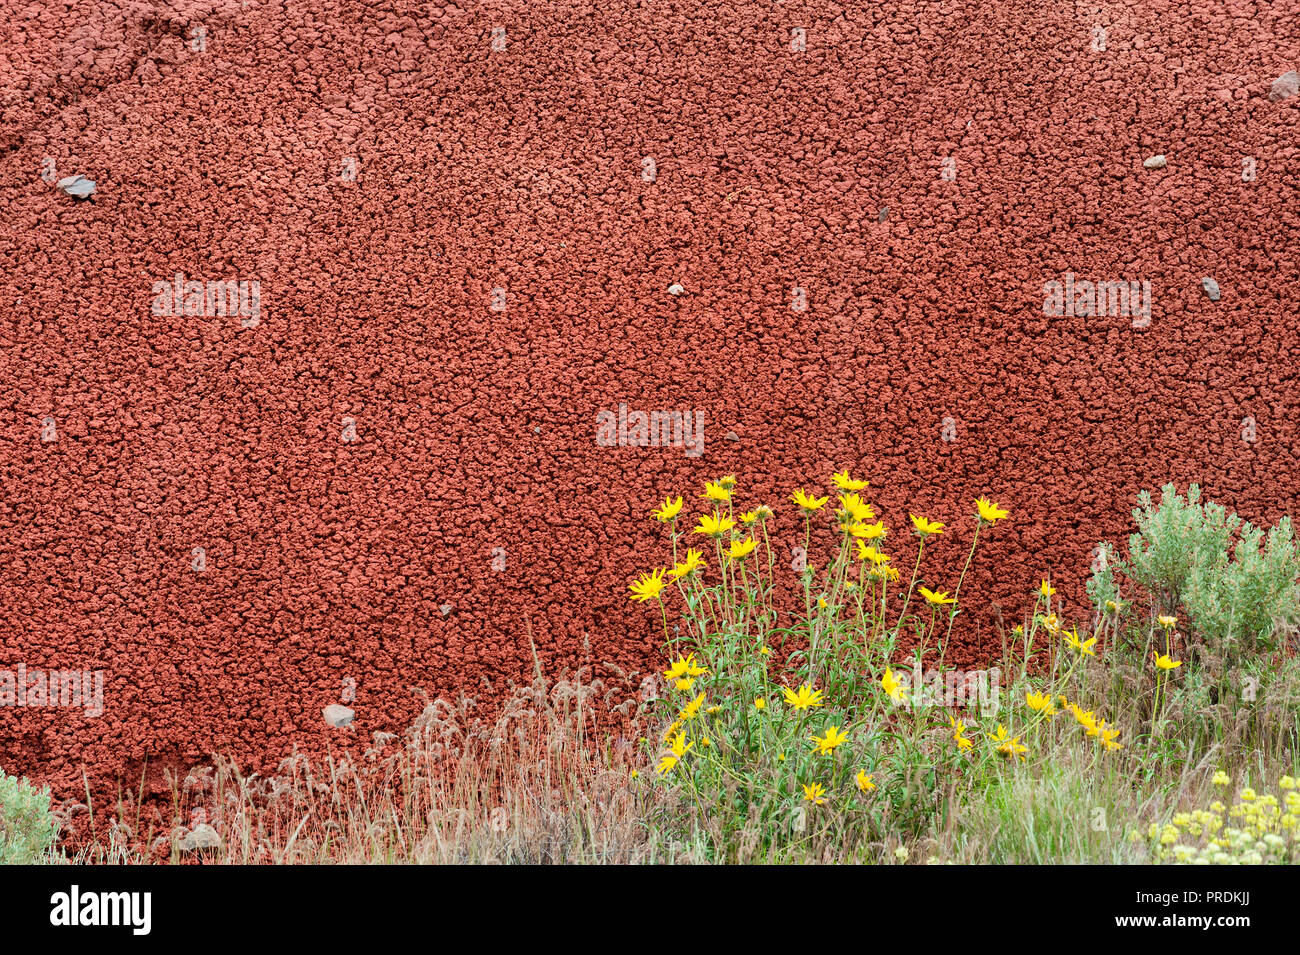 La textura de la piedra, la arcilla roja proporcionan un telón de fondo contrastante de flores amarillas en John Día yacimientos fósiles del Parque Nacional en el estado de Oregon. Foto de stock